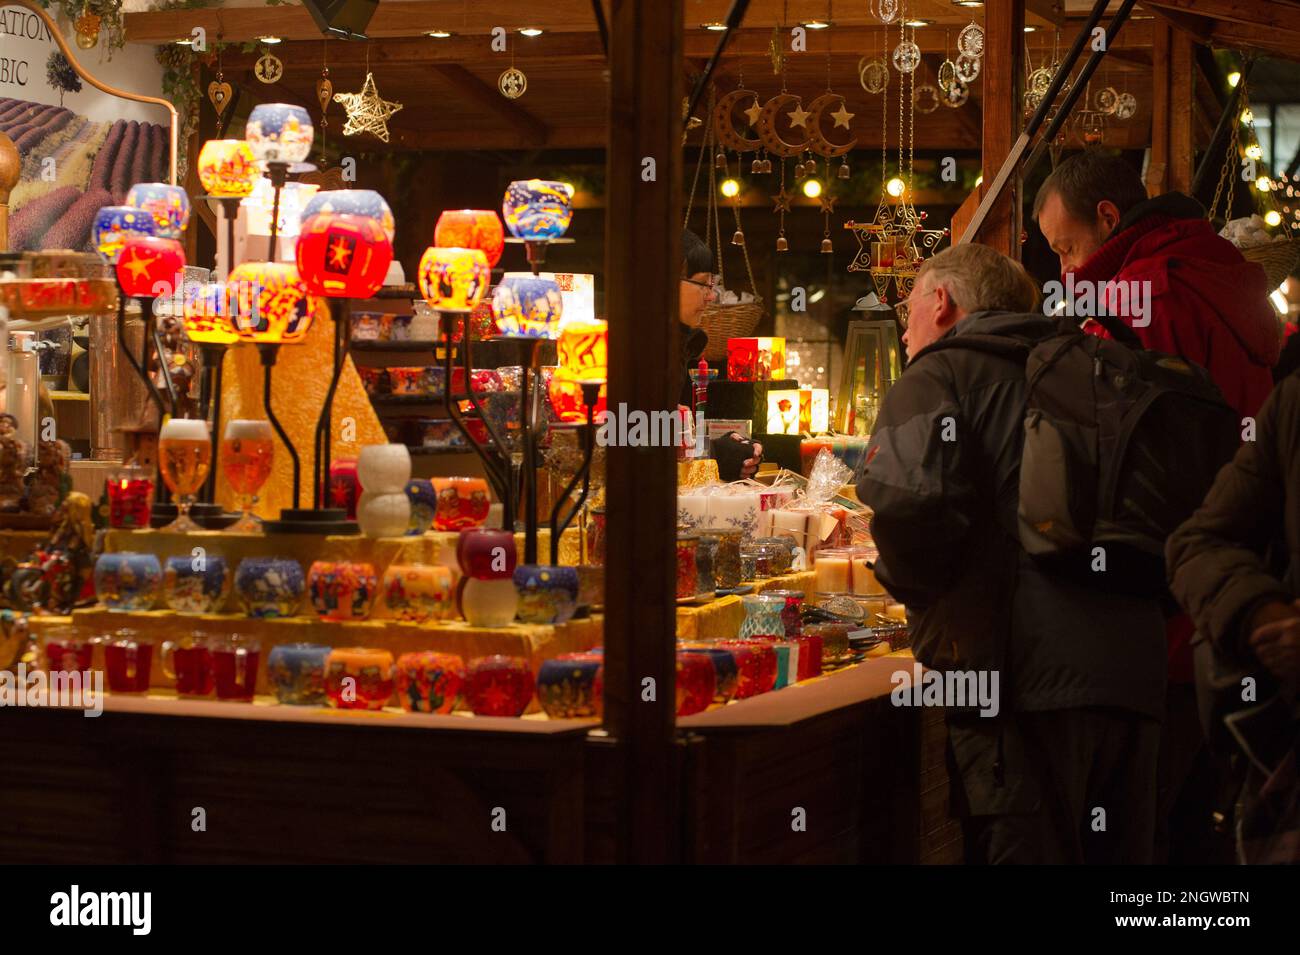 Bonn Marche de Noel sur plusieurs Places de la Cite. Produits de bouche, vin chaud, saucisses allemandes et nombreuses idees cadeaux en font un marche Foto Stock